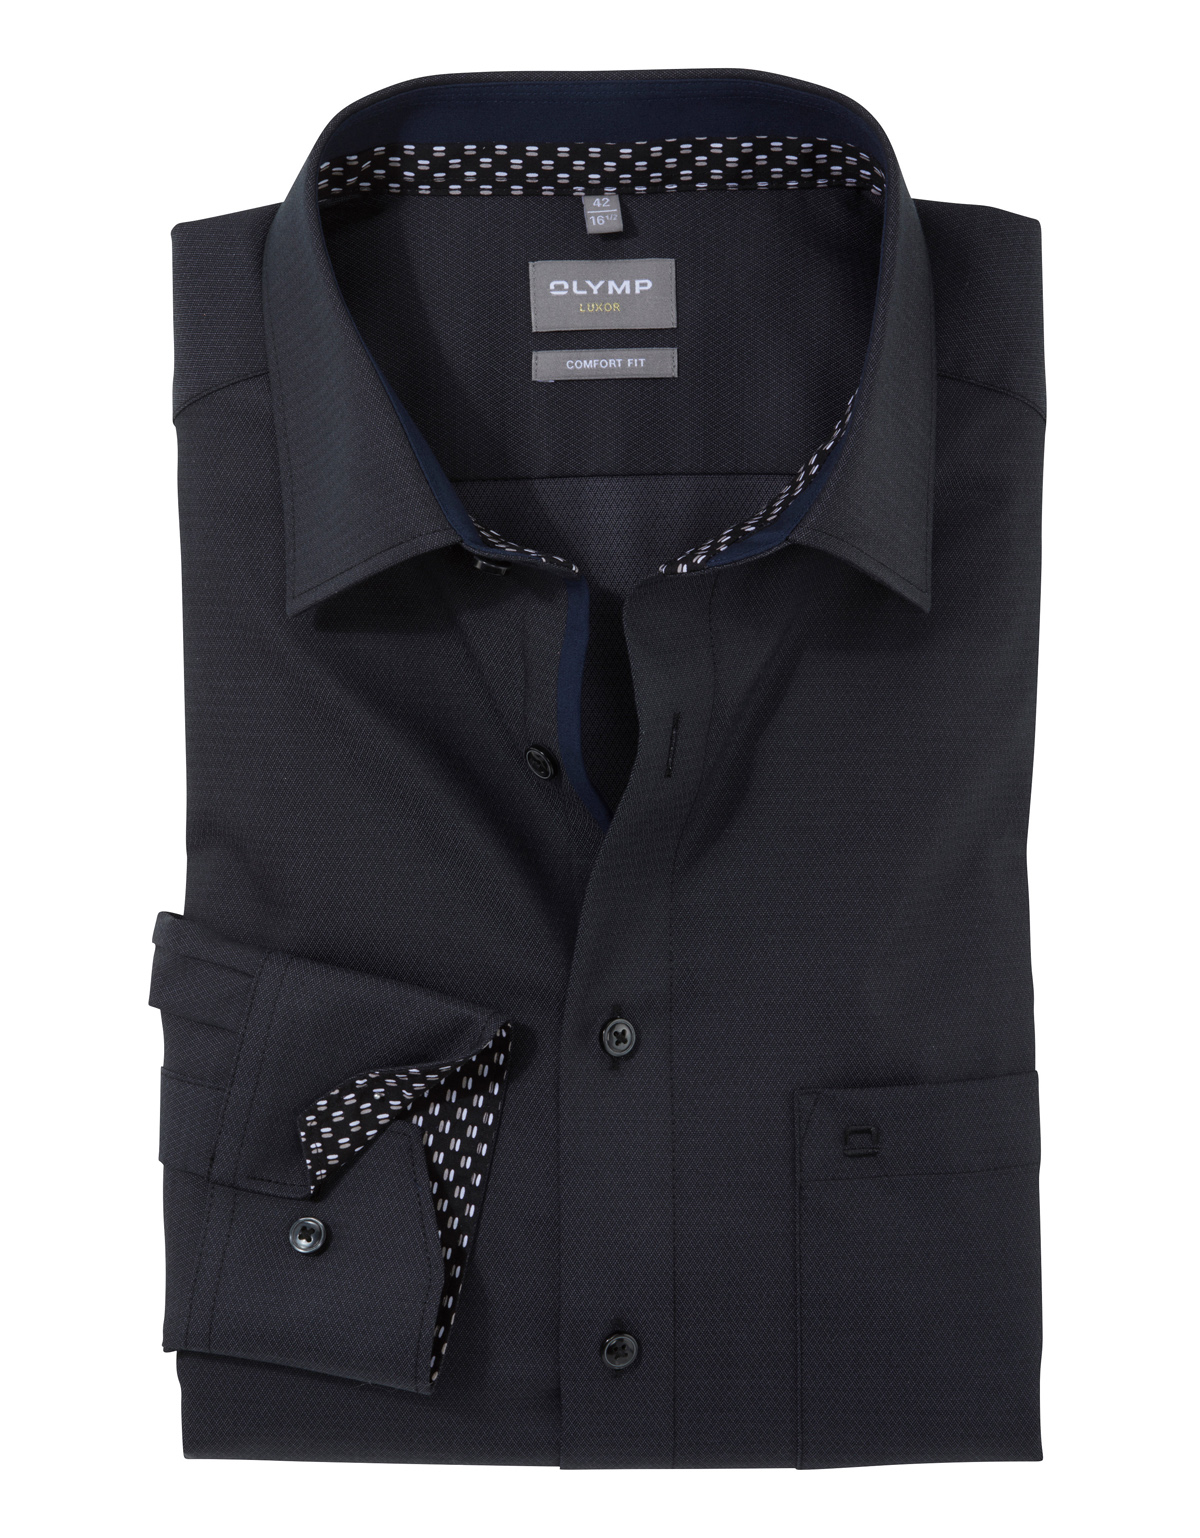 Рубашка чёрная мужская OLYMP Luxor, прямой крой, фактурная ткань[Графит]